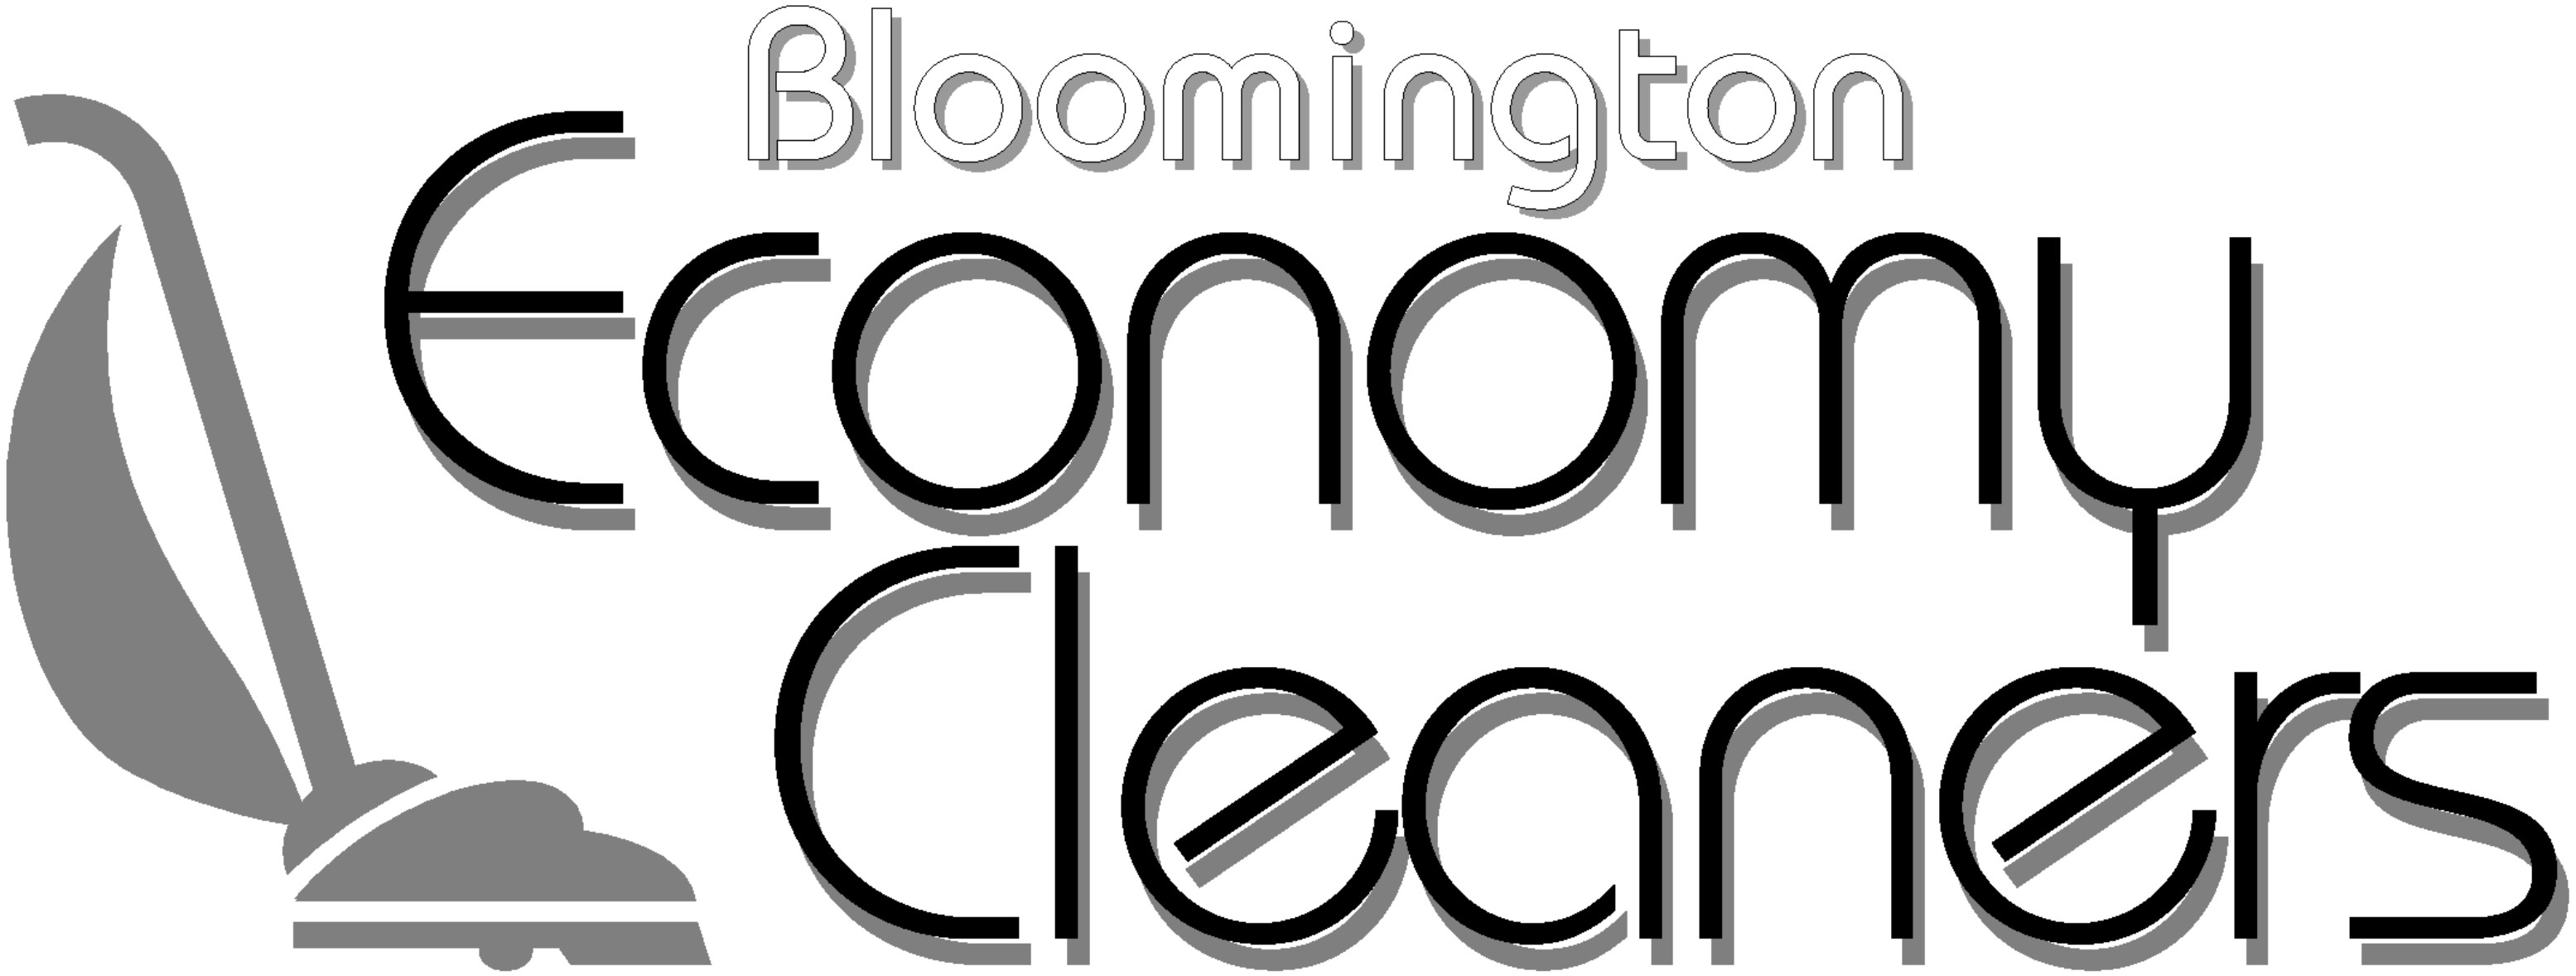 Bloomington Economy Cleaners, Inc.